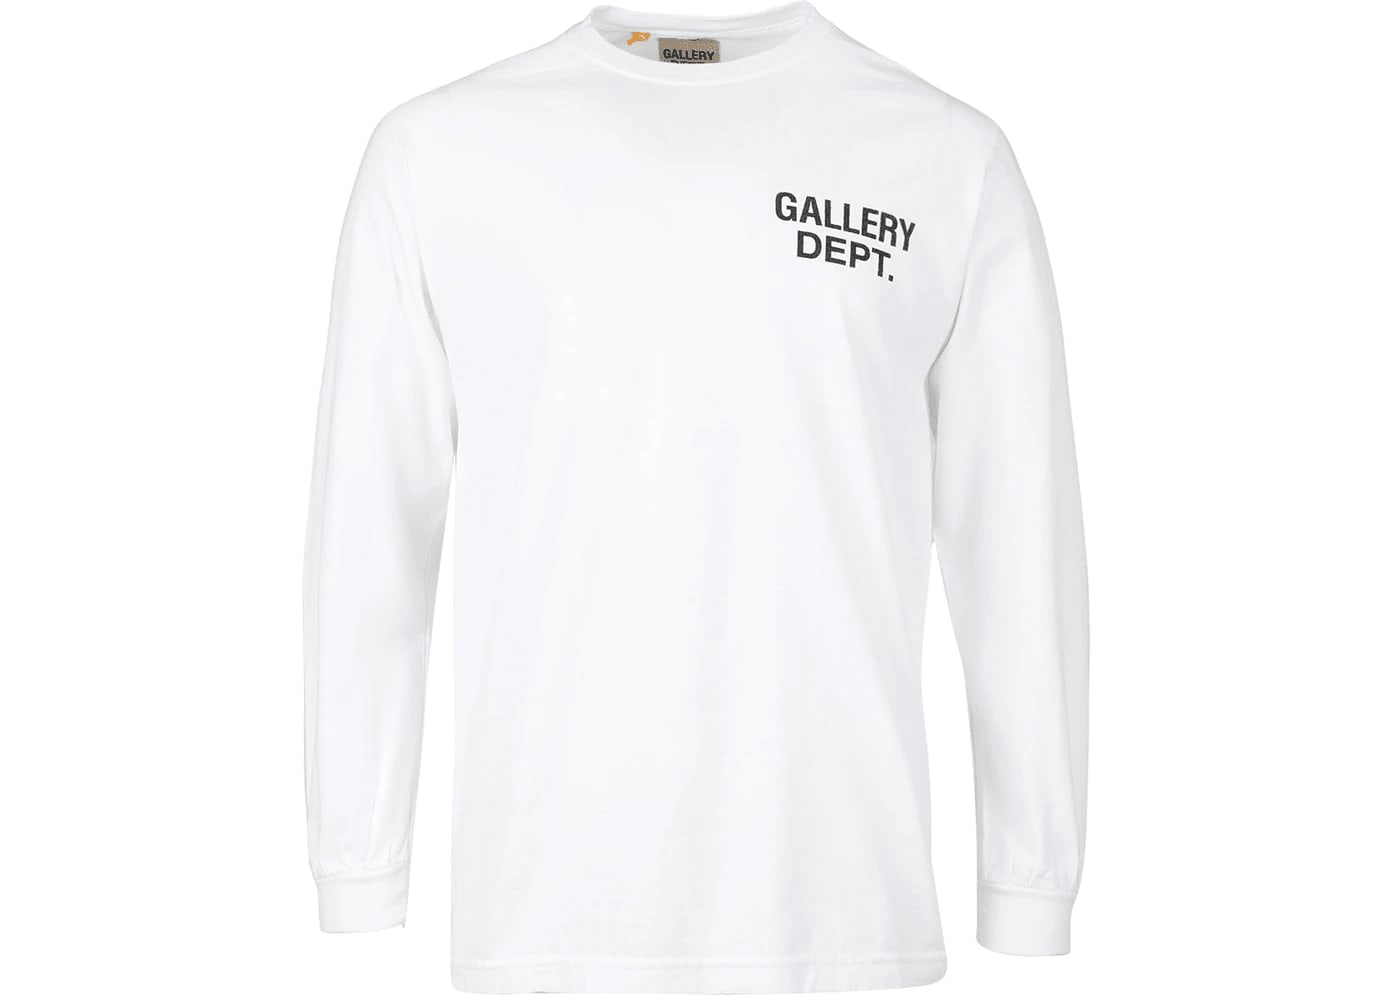 Gallery Dept. Souvenir L/S T-shirt White